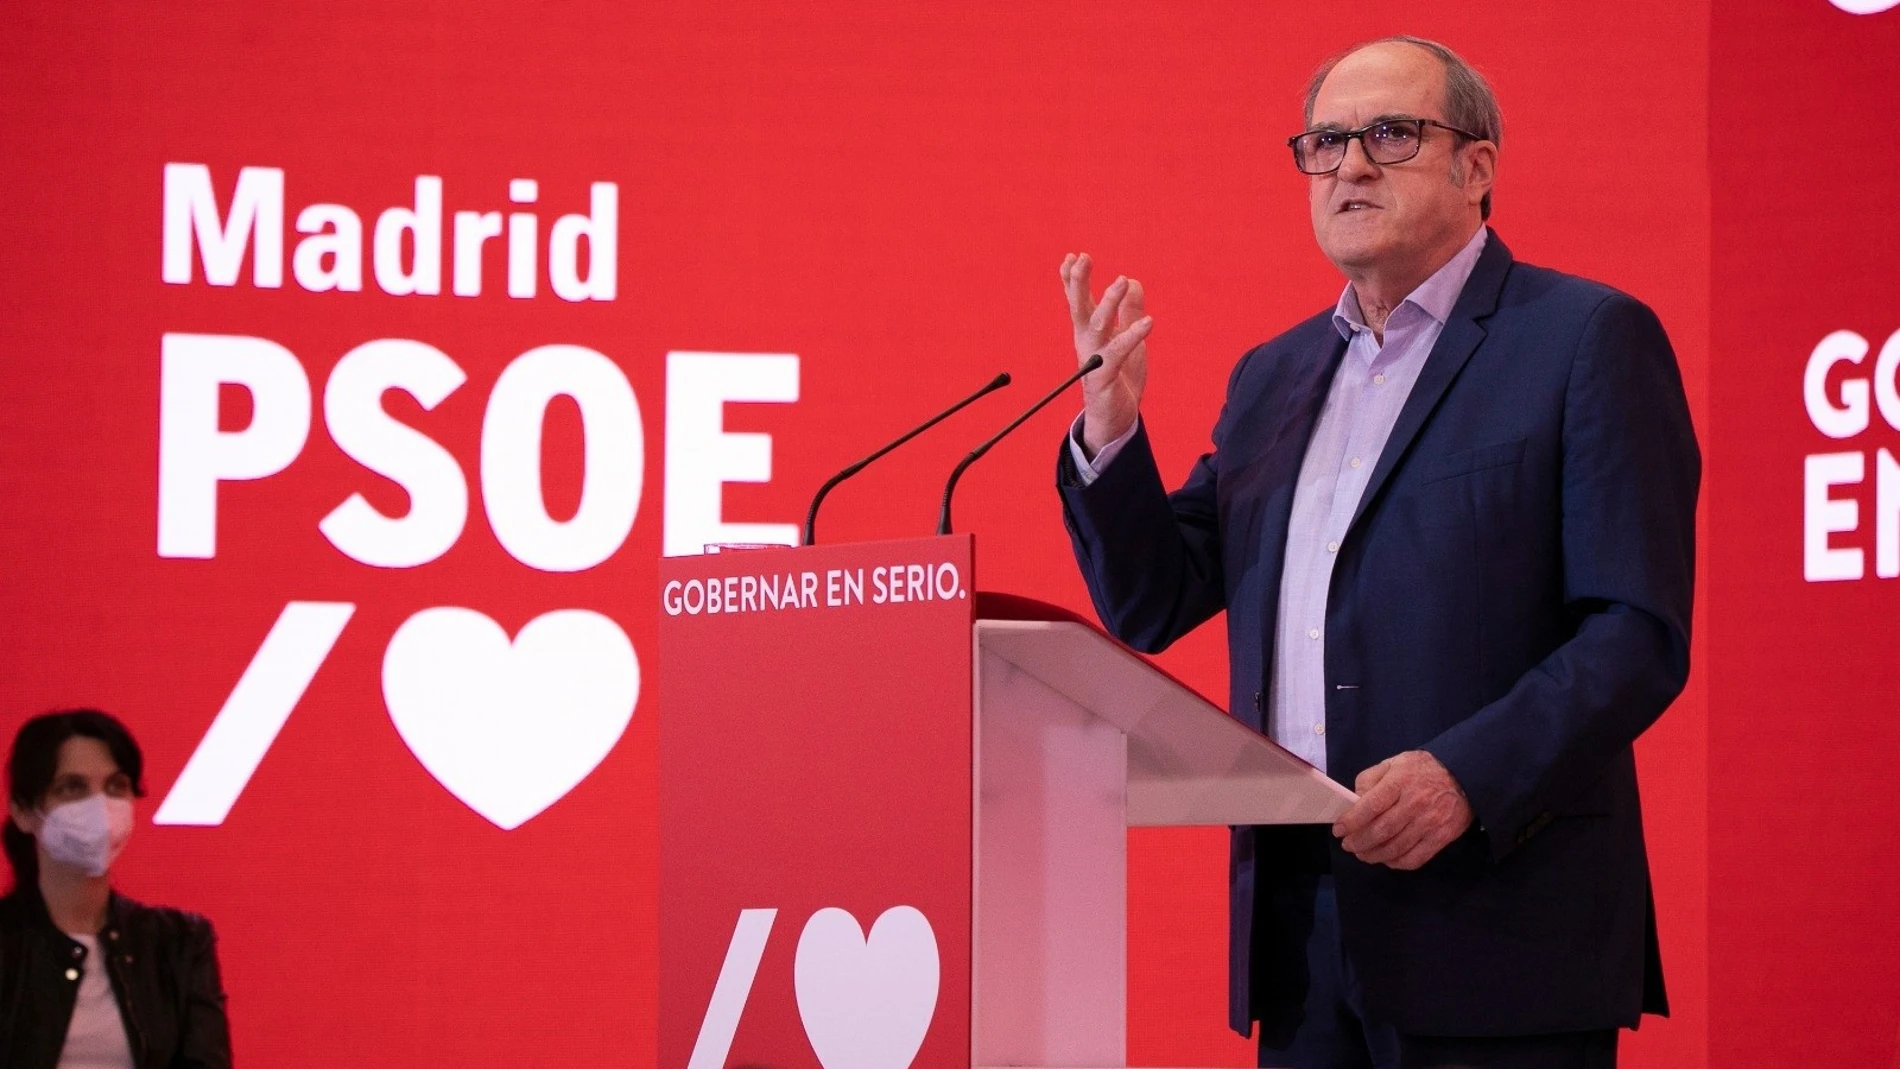 El candidato del PSOE a la Presidencia de la Comunidad de Madrid, Ángel Gabilondo, durante un acto de campaña en la sede del partido en Ferraz.